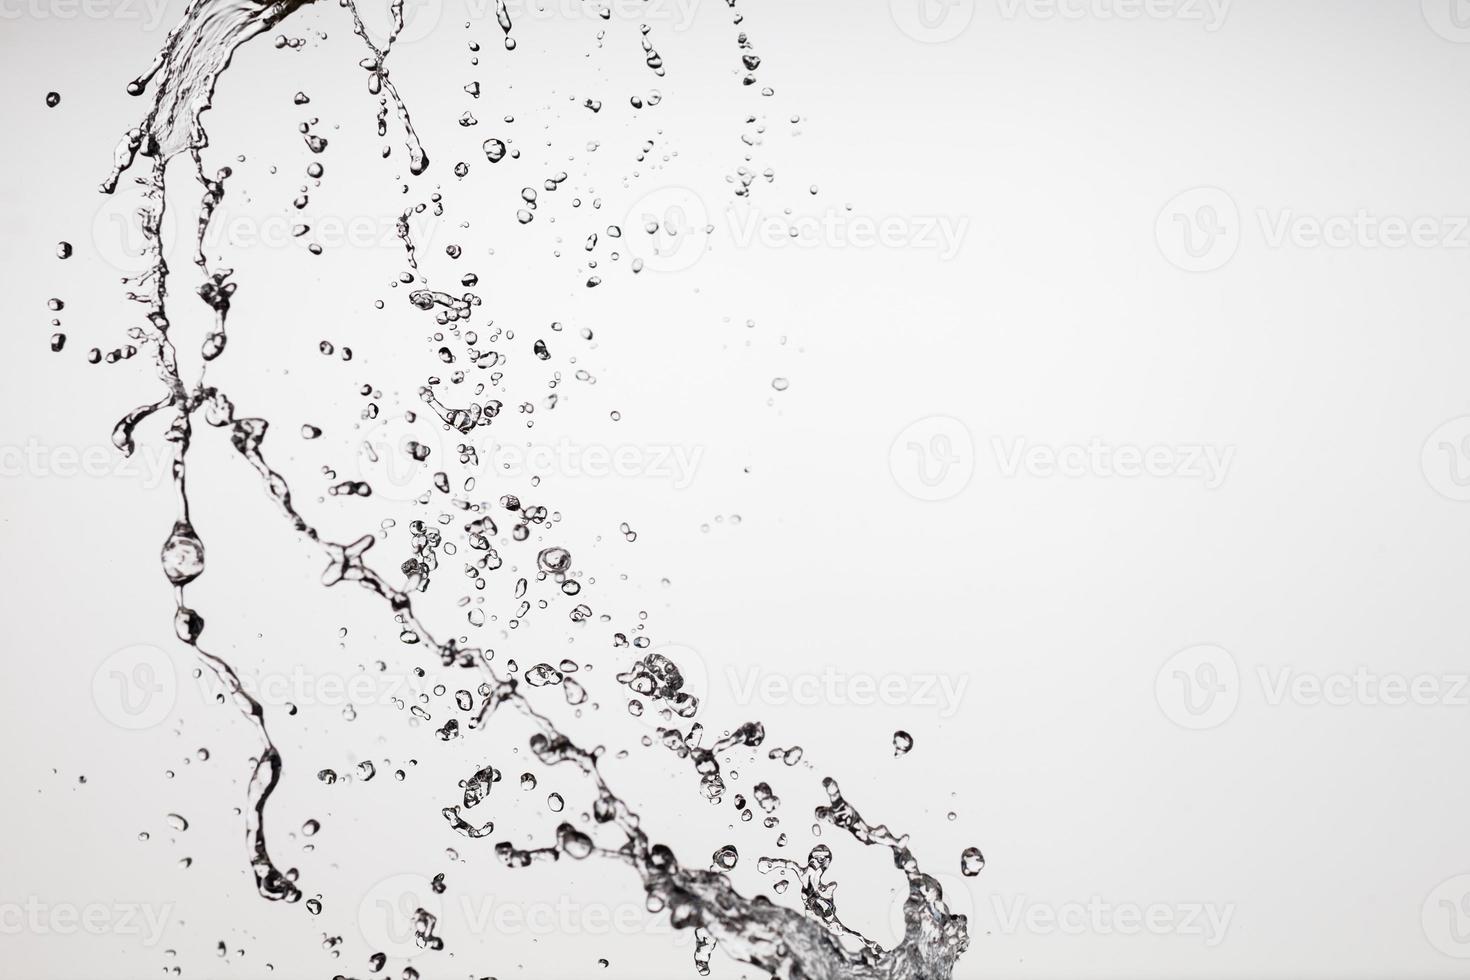 faller vatten på en vit bakgrund foto